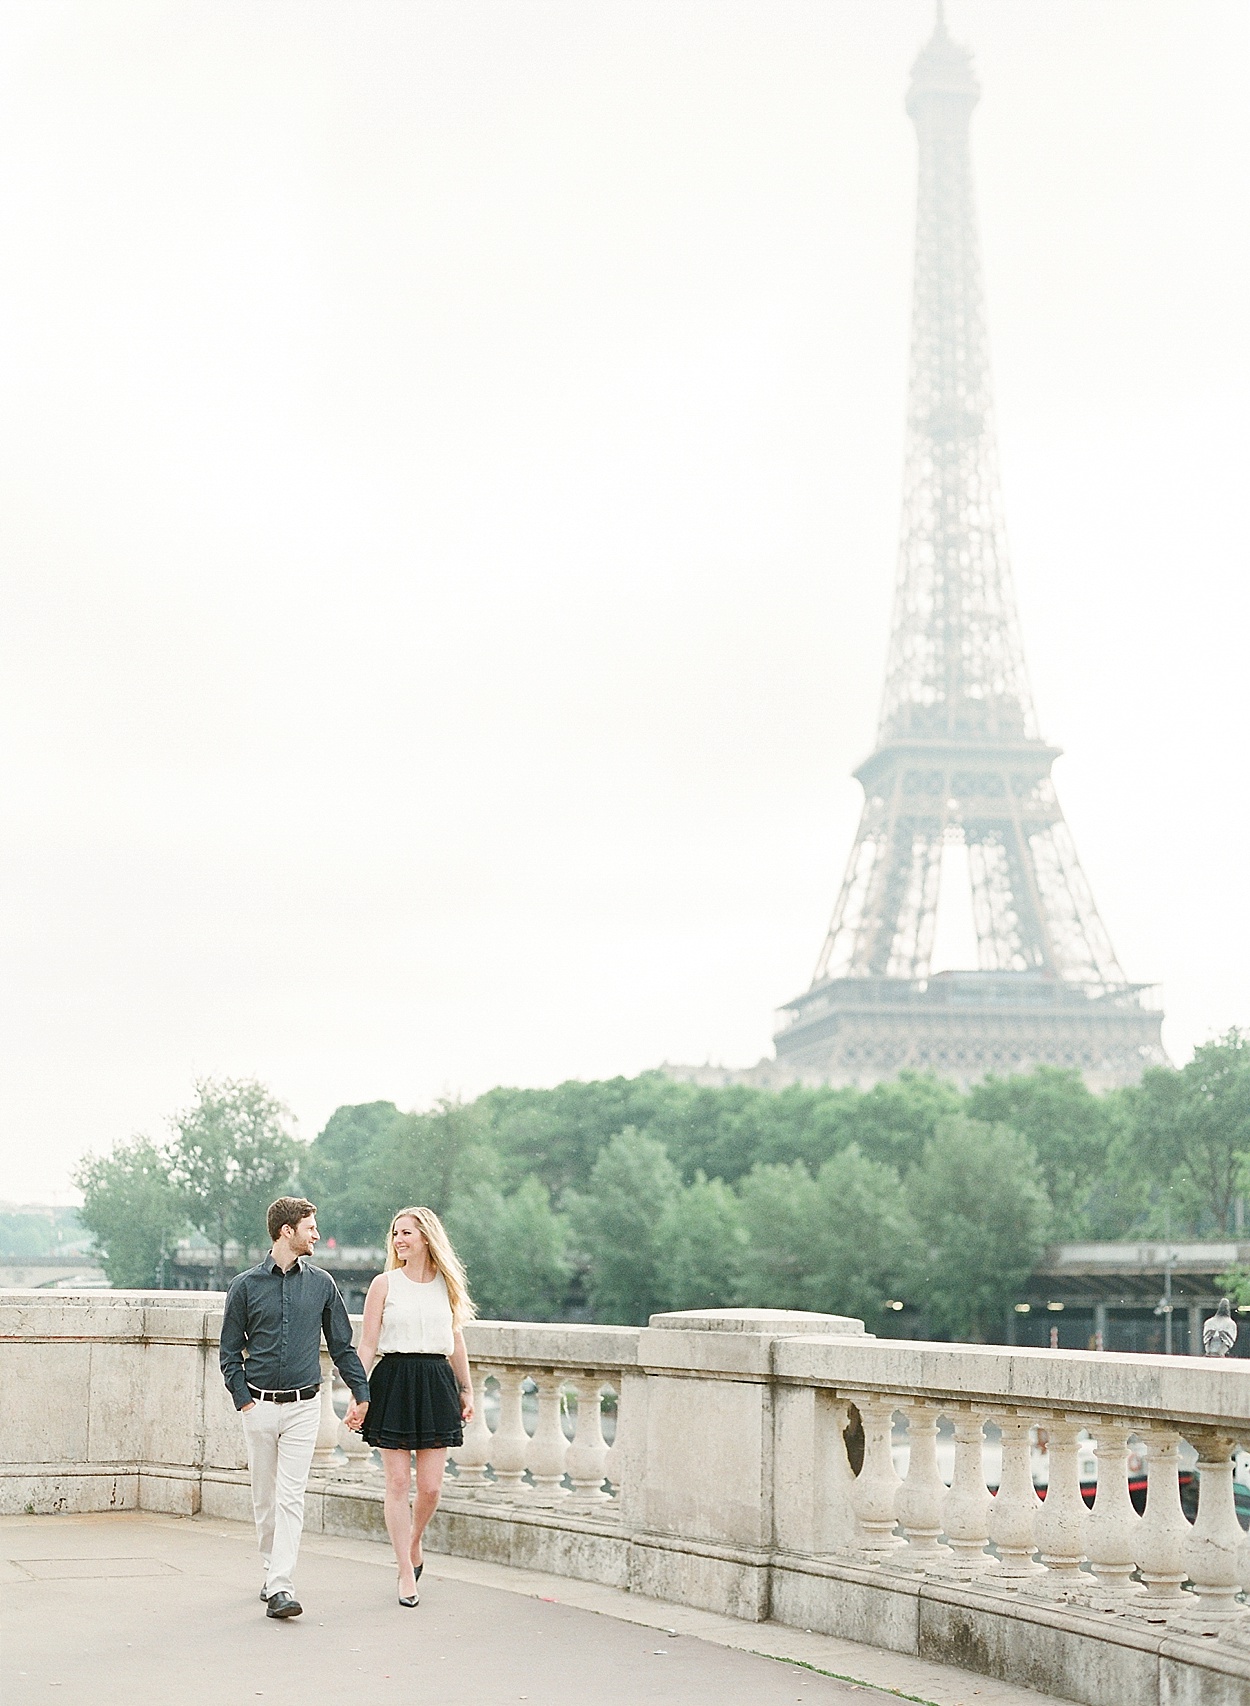 romantic Paris, France portraits on the Seine | Abby Grace Photography